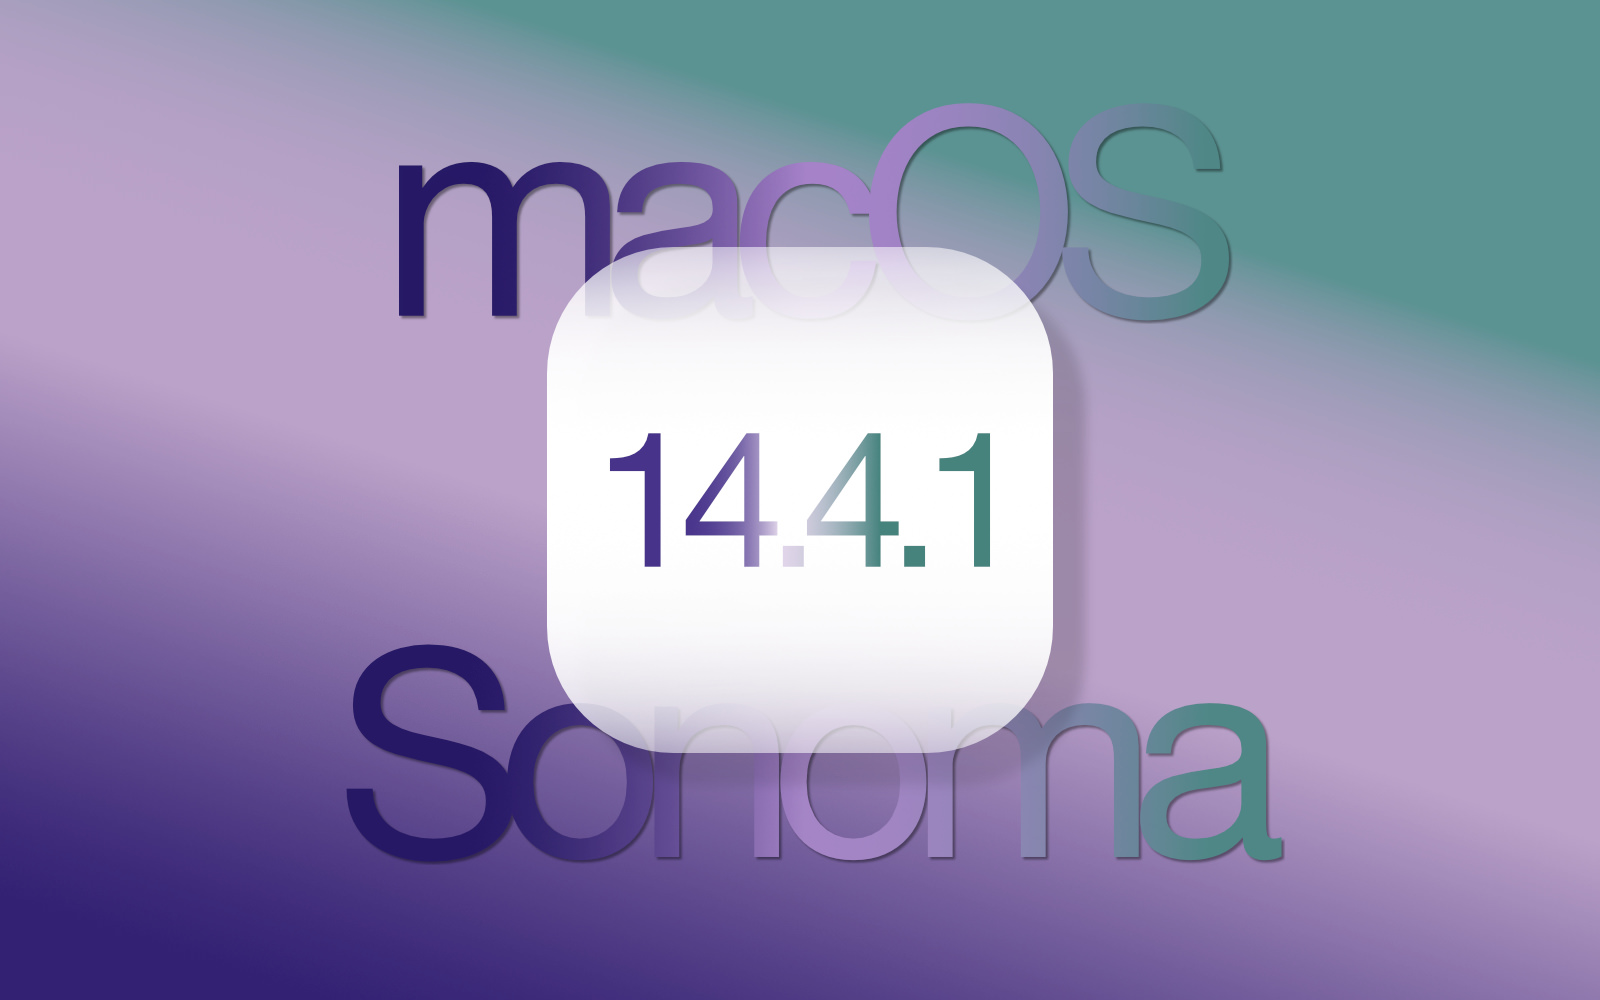 macOS-Sonoma_14_4_1-update-release.jpg